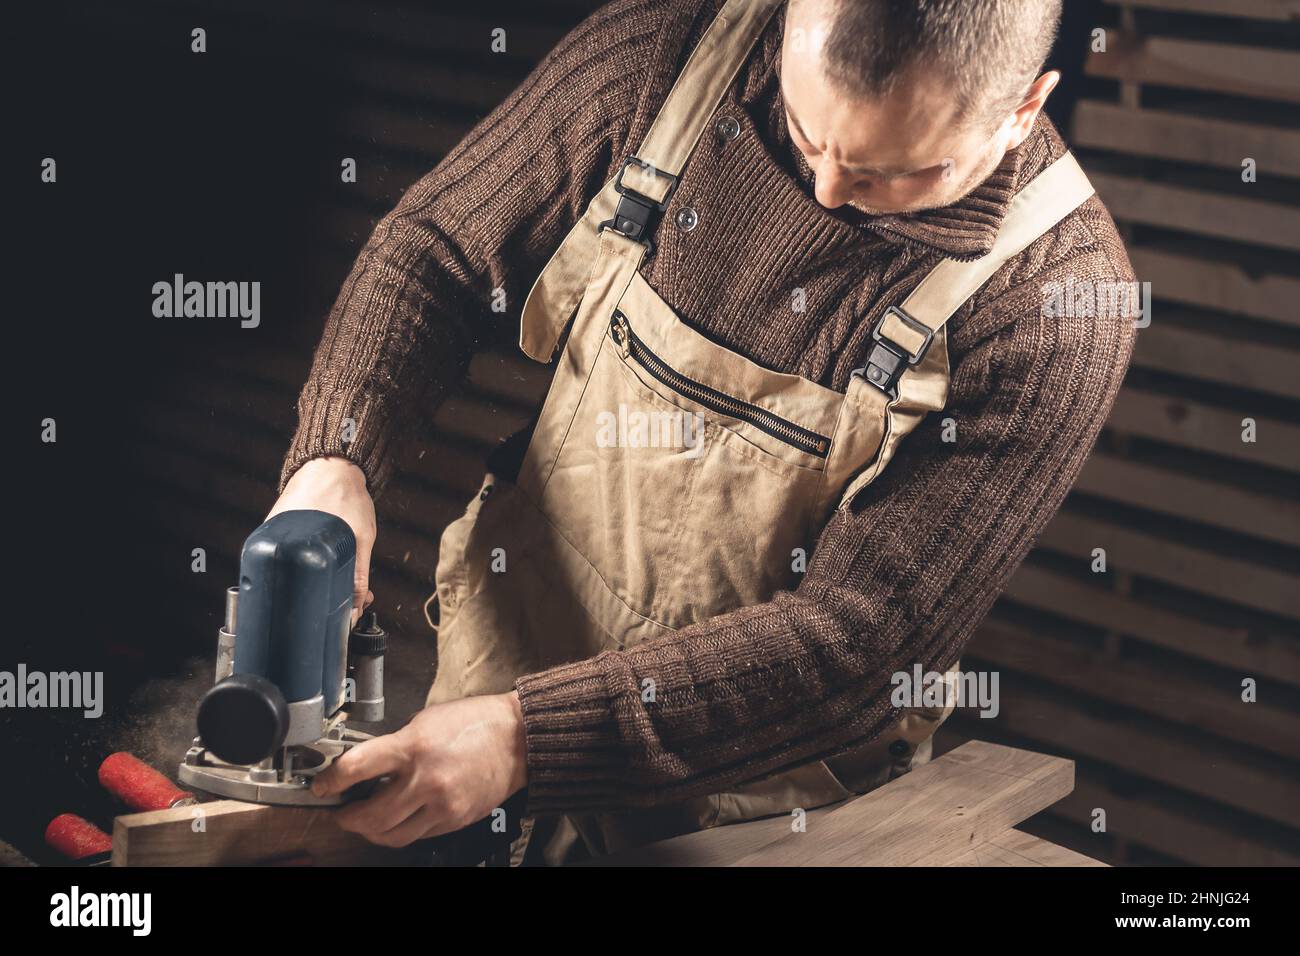 Un uomo produce prodotti in legno con l'aiuto di attrezzi speciali. Ritratto di un giovane falegname al lavoro. Occupazione nel settore della lavorazione del legno Foto Stock